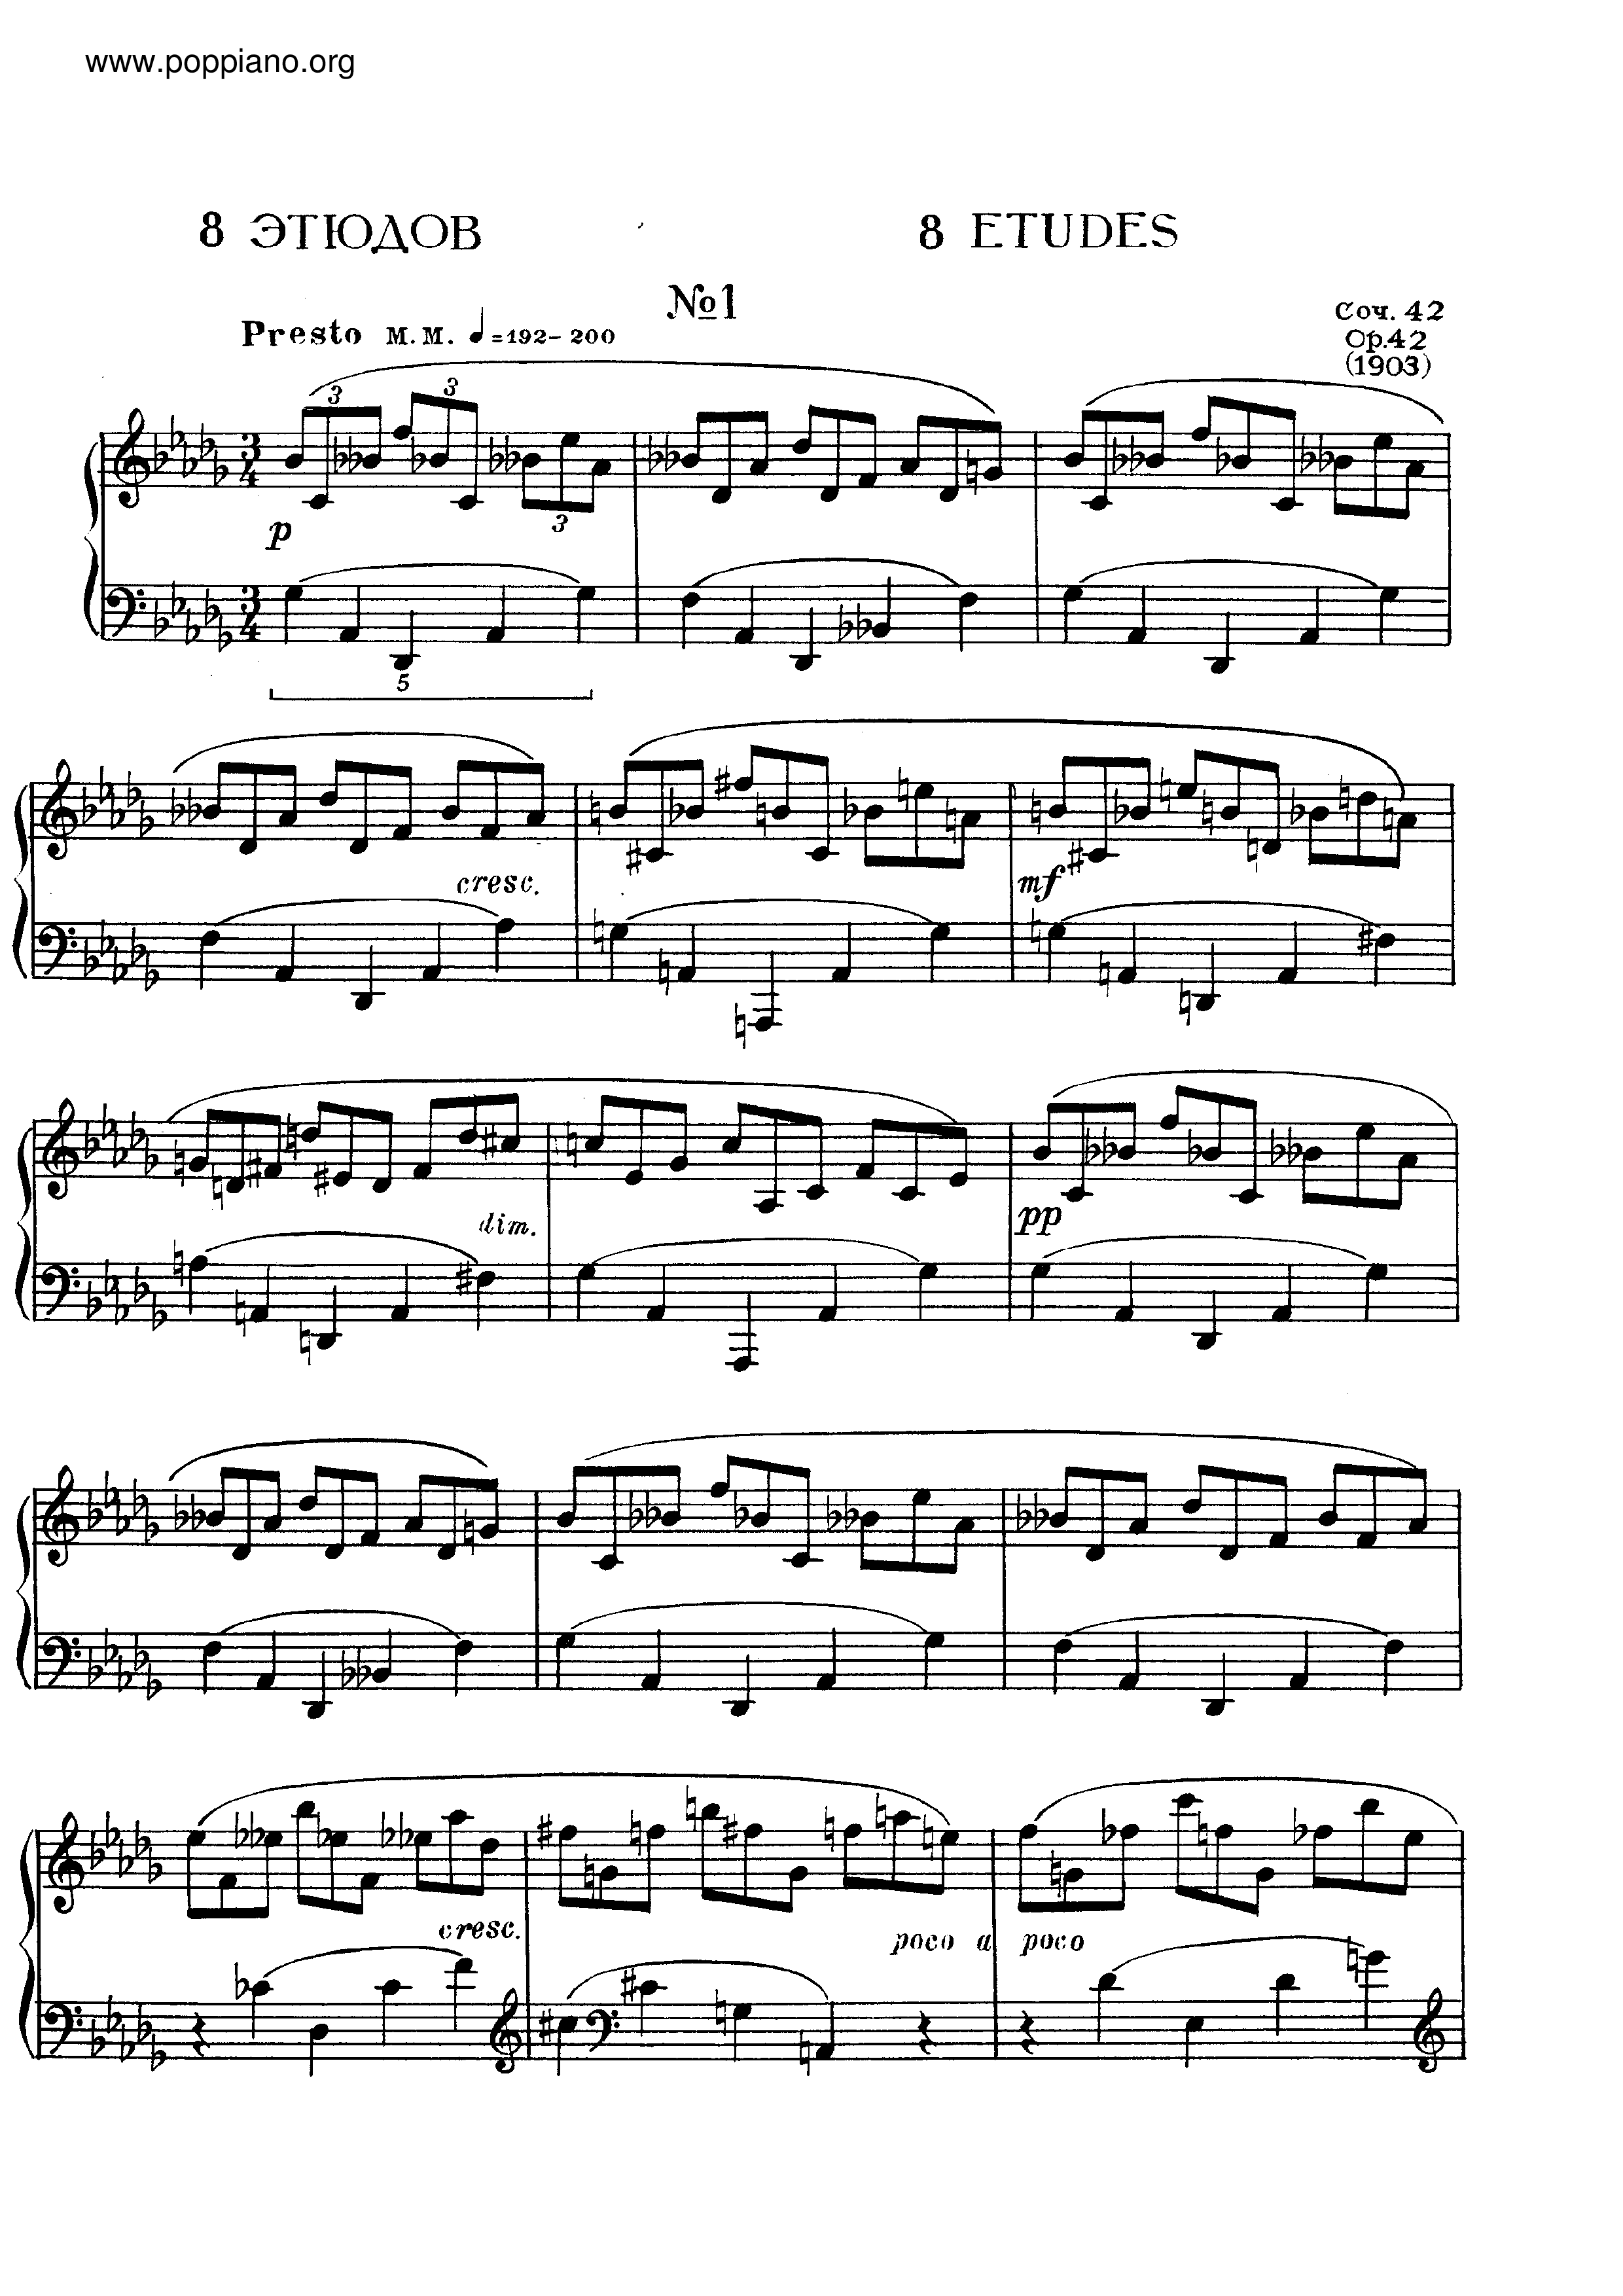 No.1 Etude in D flat major, Op.42 Score